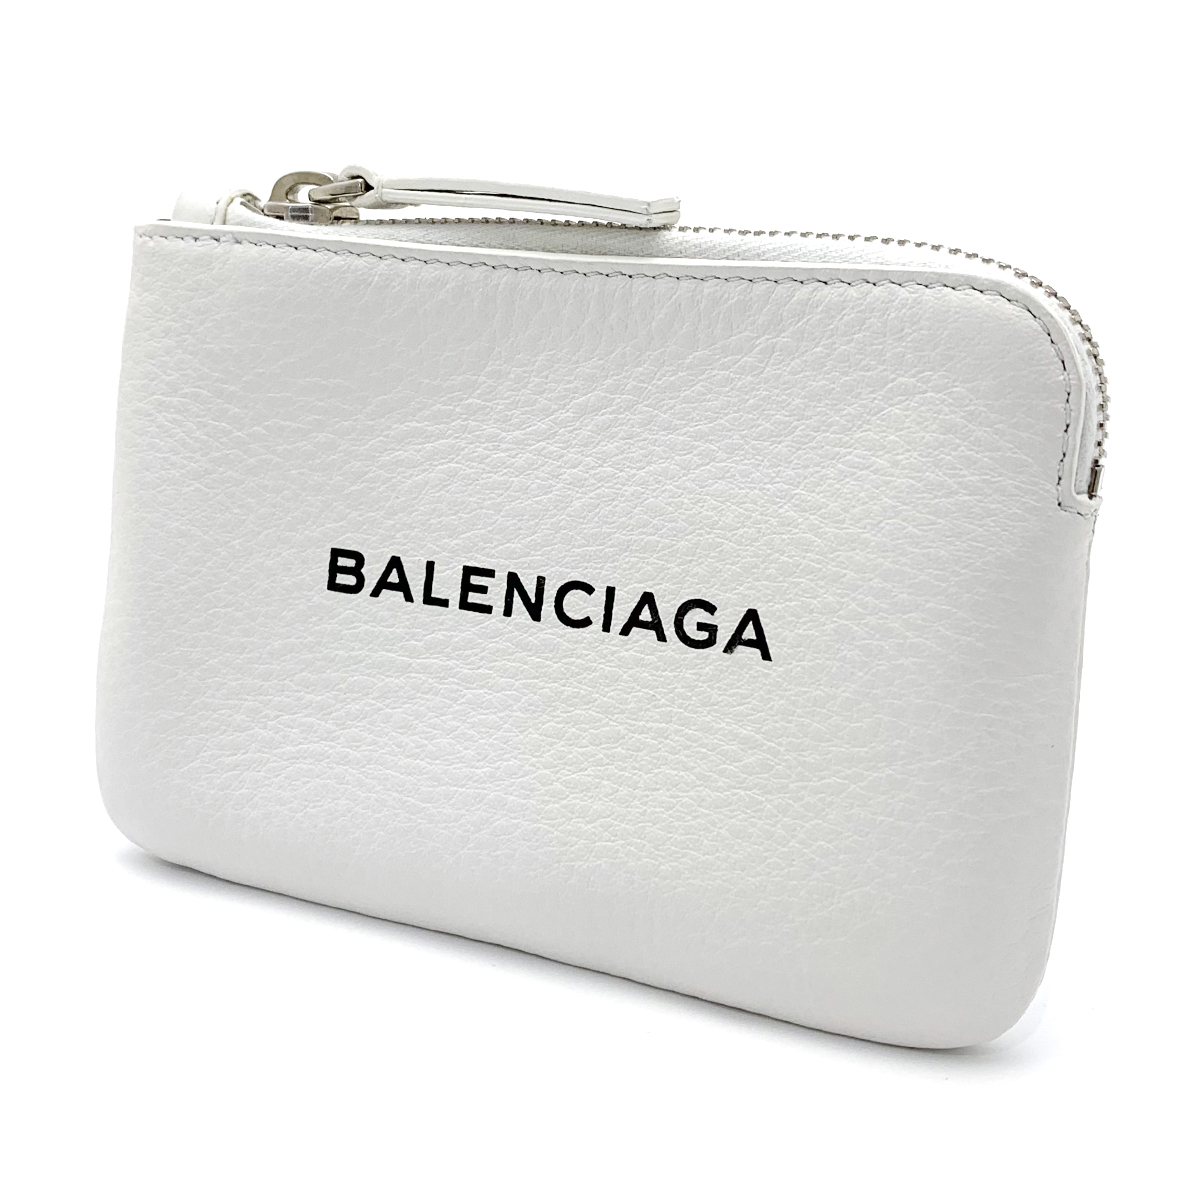 バレンシアガ(BALENCIAGA) エブリデイ コインケース 492464 レザー ホワイト ミニポーチ 保存袋